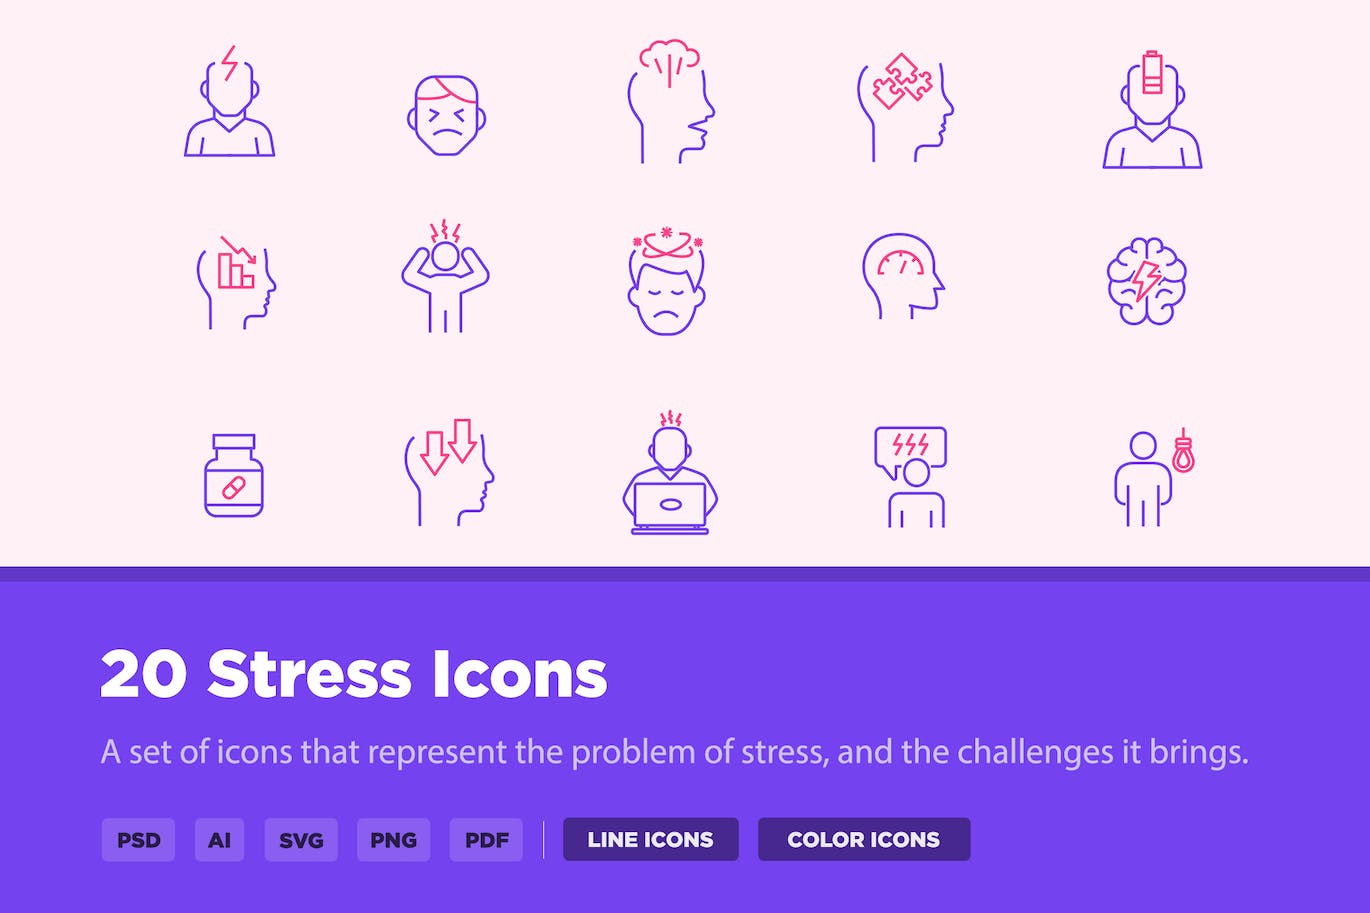 20个压力线条样式矢量图标 20 Stress Icons 图标素材 第1张